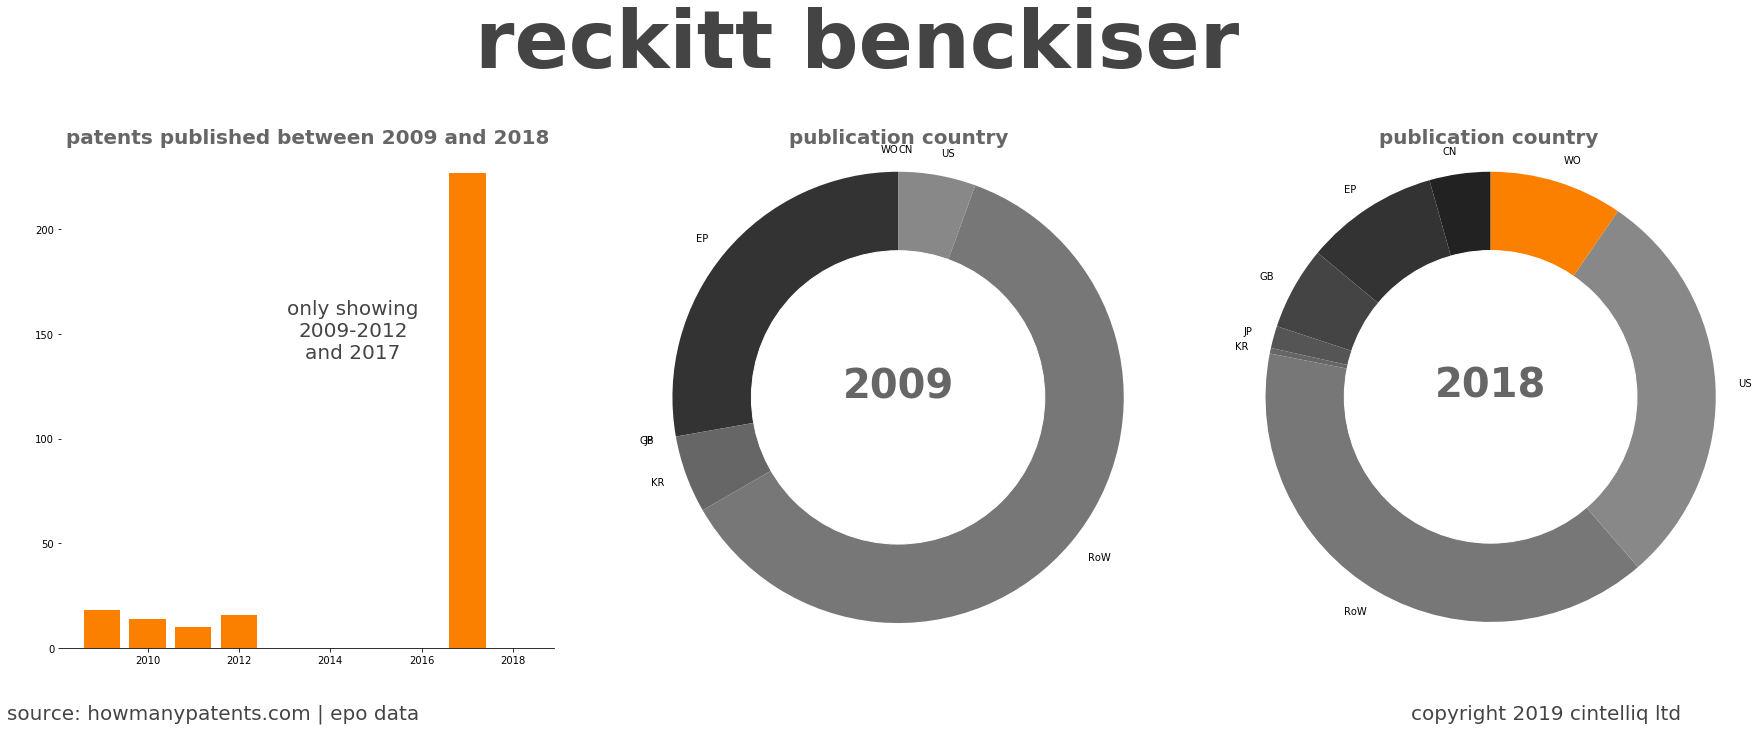 summary of patents for Reckitt Benckiser 